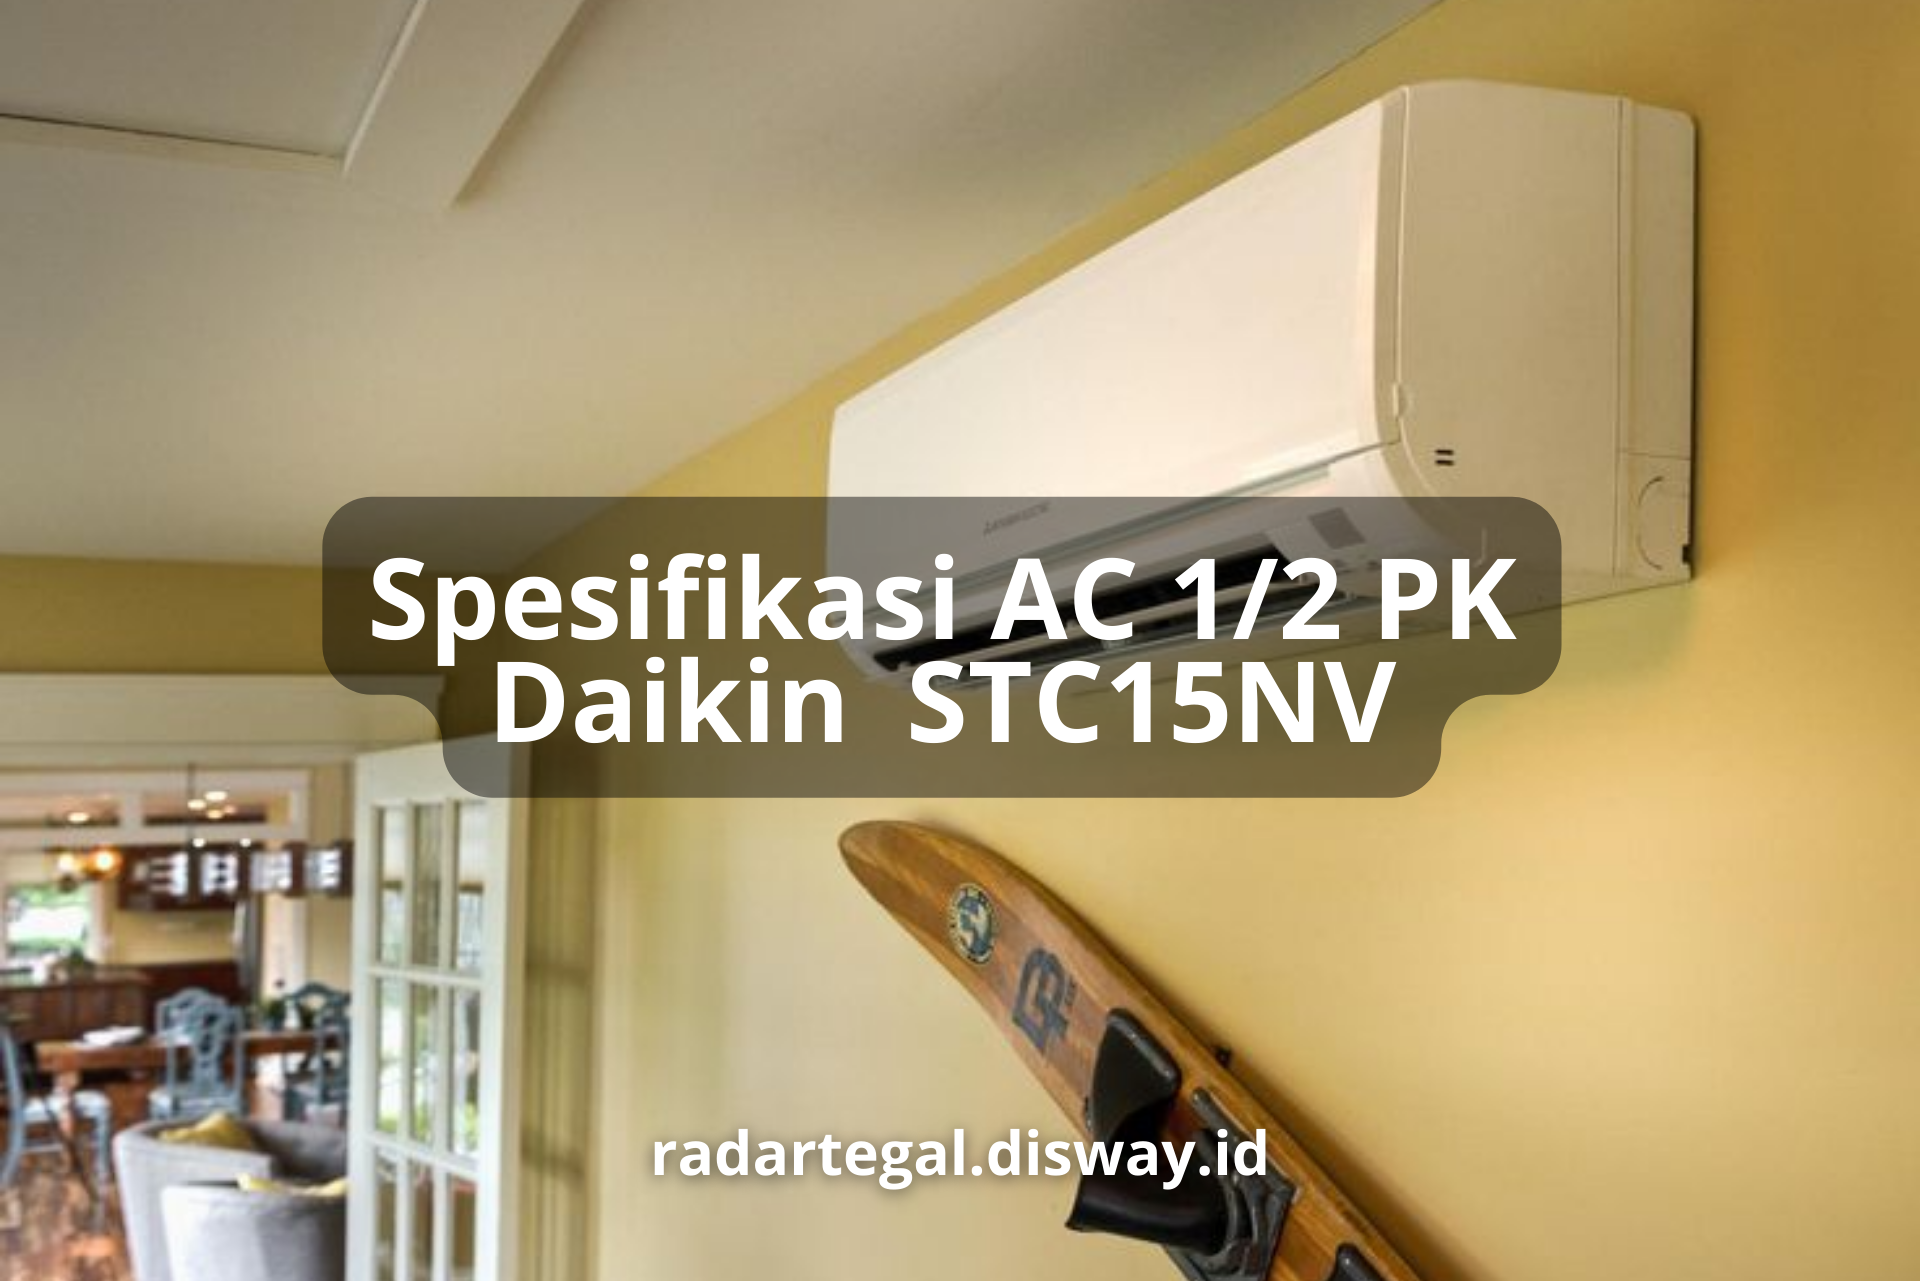 Spesifikasi AC 1/2 PK Daikin STC15NV, Pendingin Ruangan yang Hemat Energi dan Ramah Lingkungan